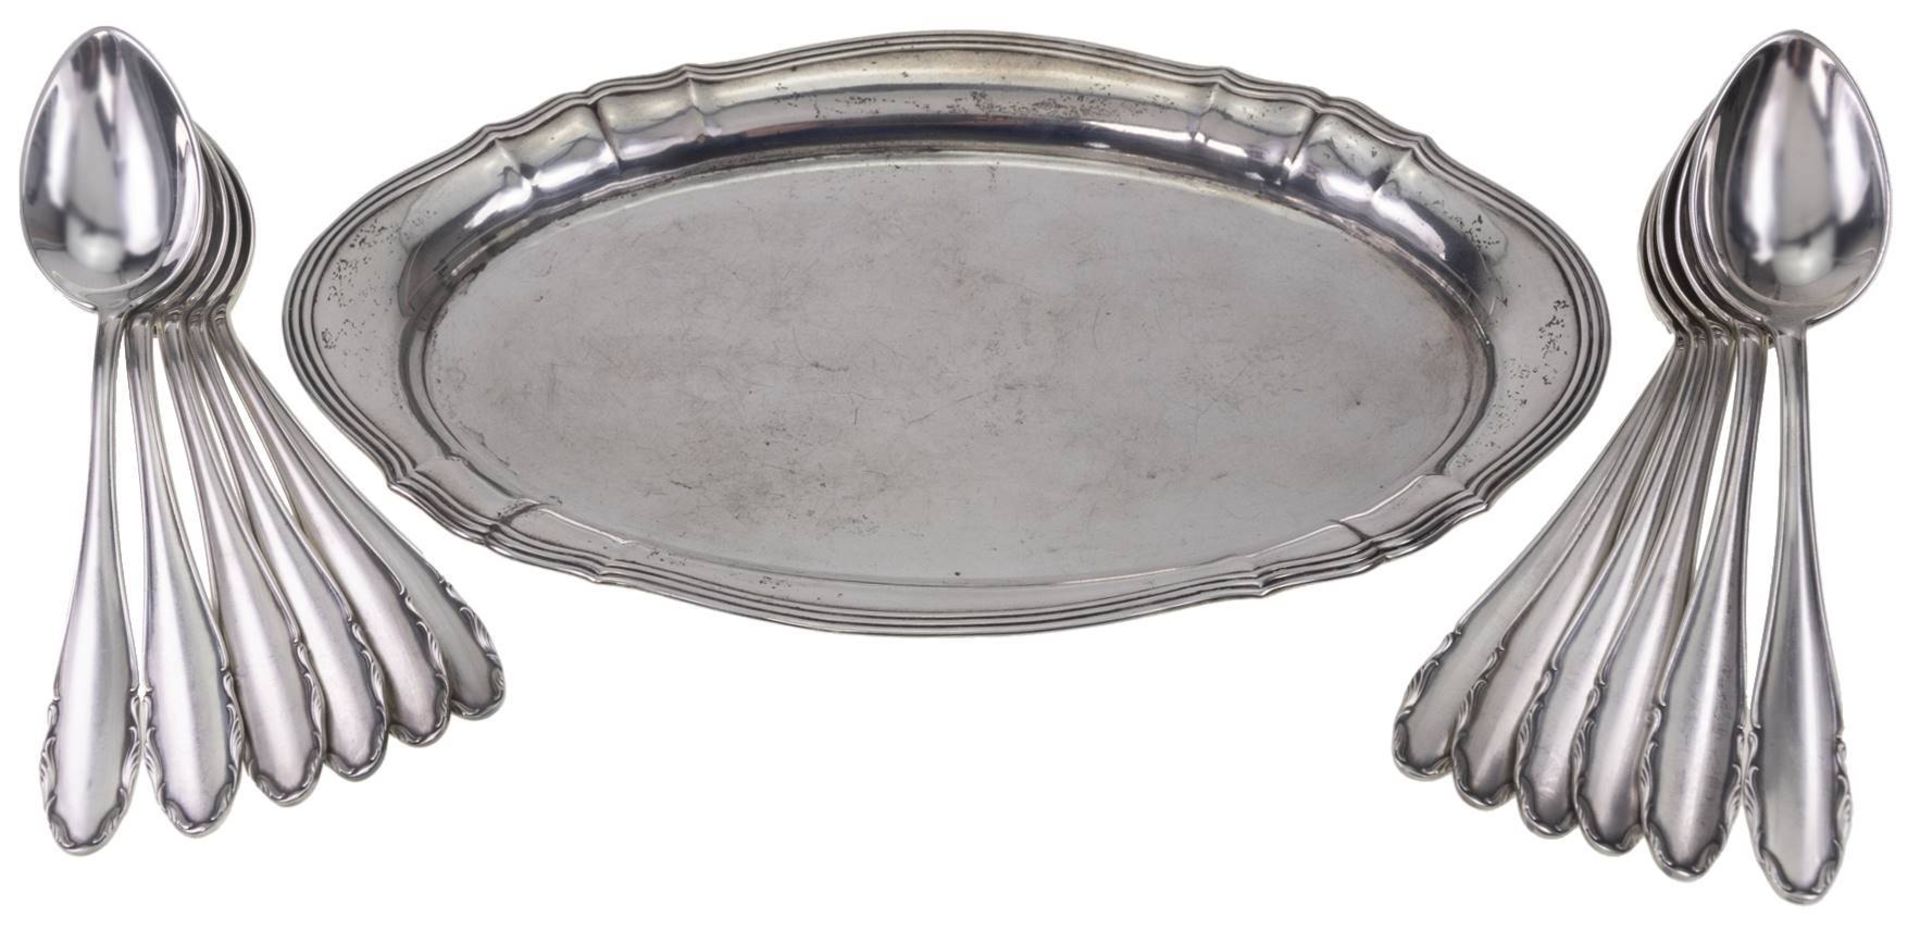 Kleines Tablett 830 Silber ca. 23x 15 cm und 12 Kaffelöffel von WMF in 800 Silber, Gesamtgewicht ca. - Bild 2 aus 6